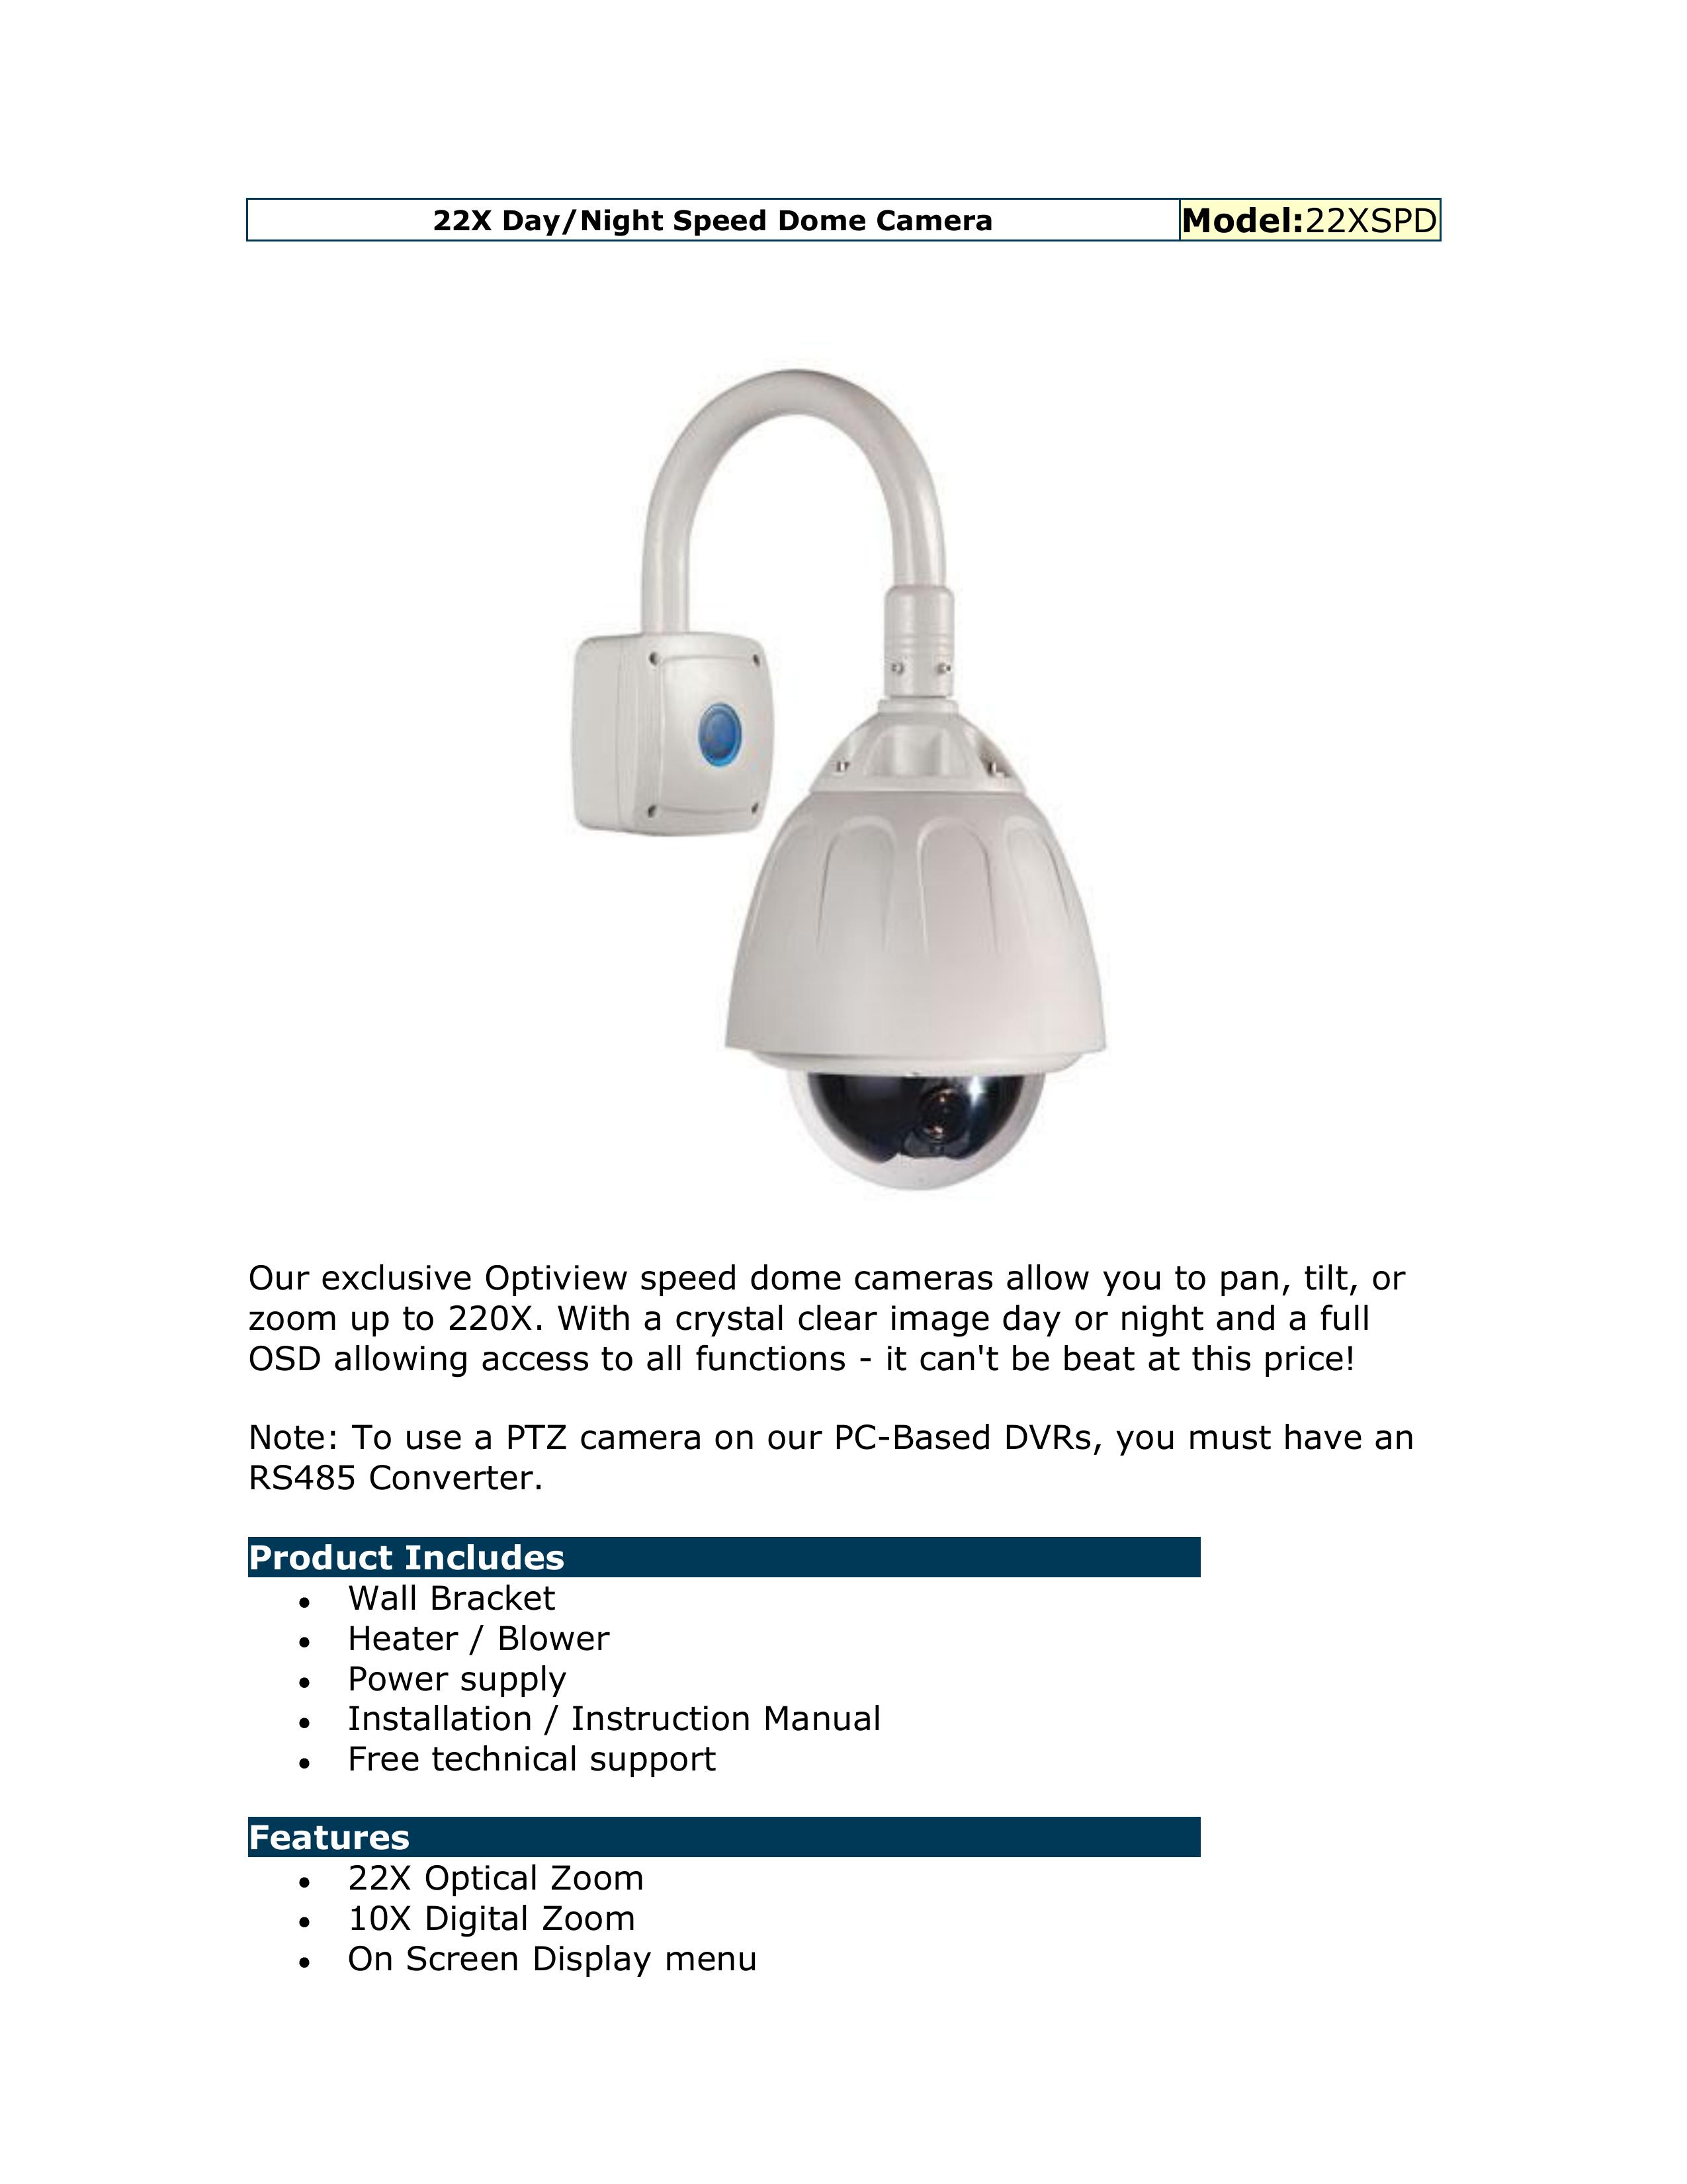 Optiview 22XSPD Security Camera User Manual